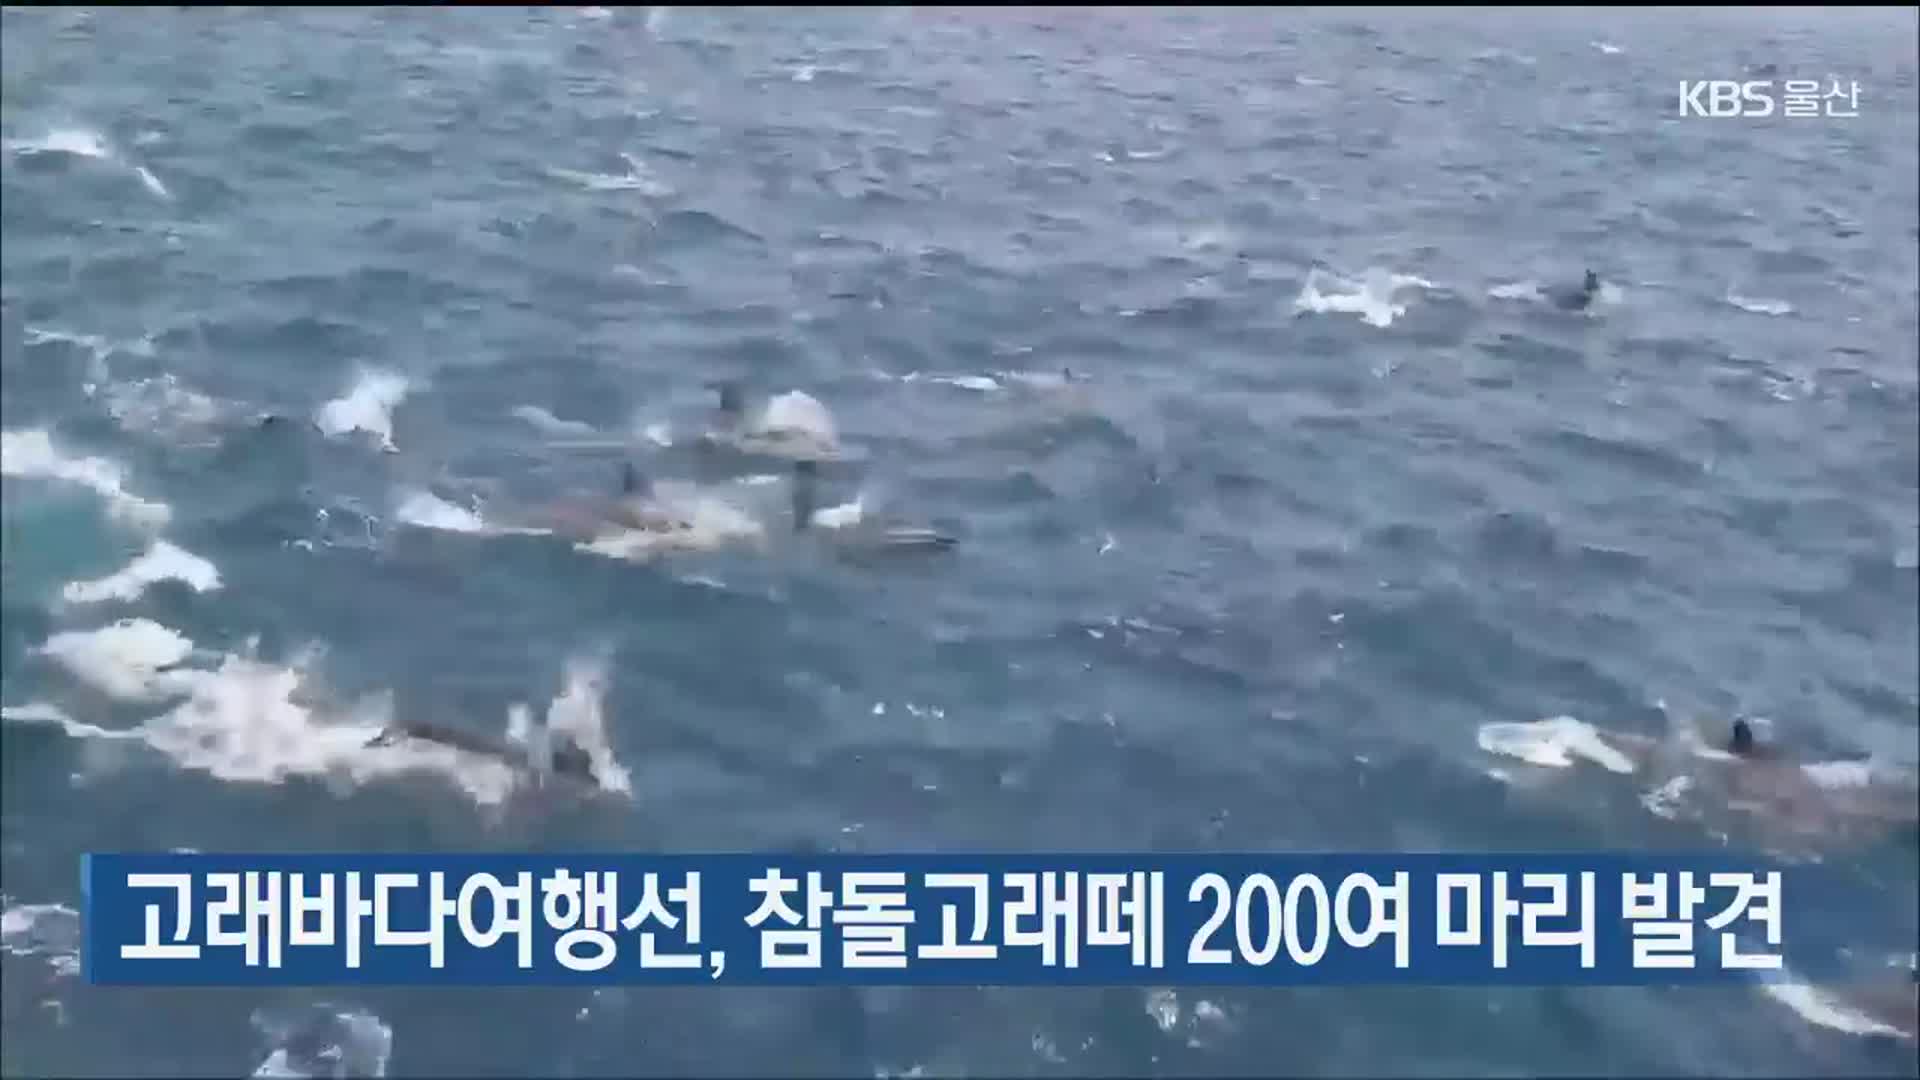 고래바다여행선, 참돌고래떼 200여 마리 발견